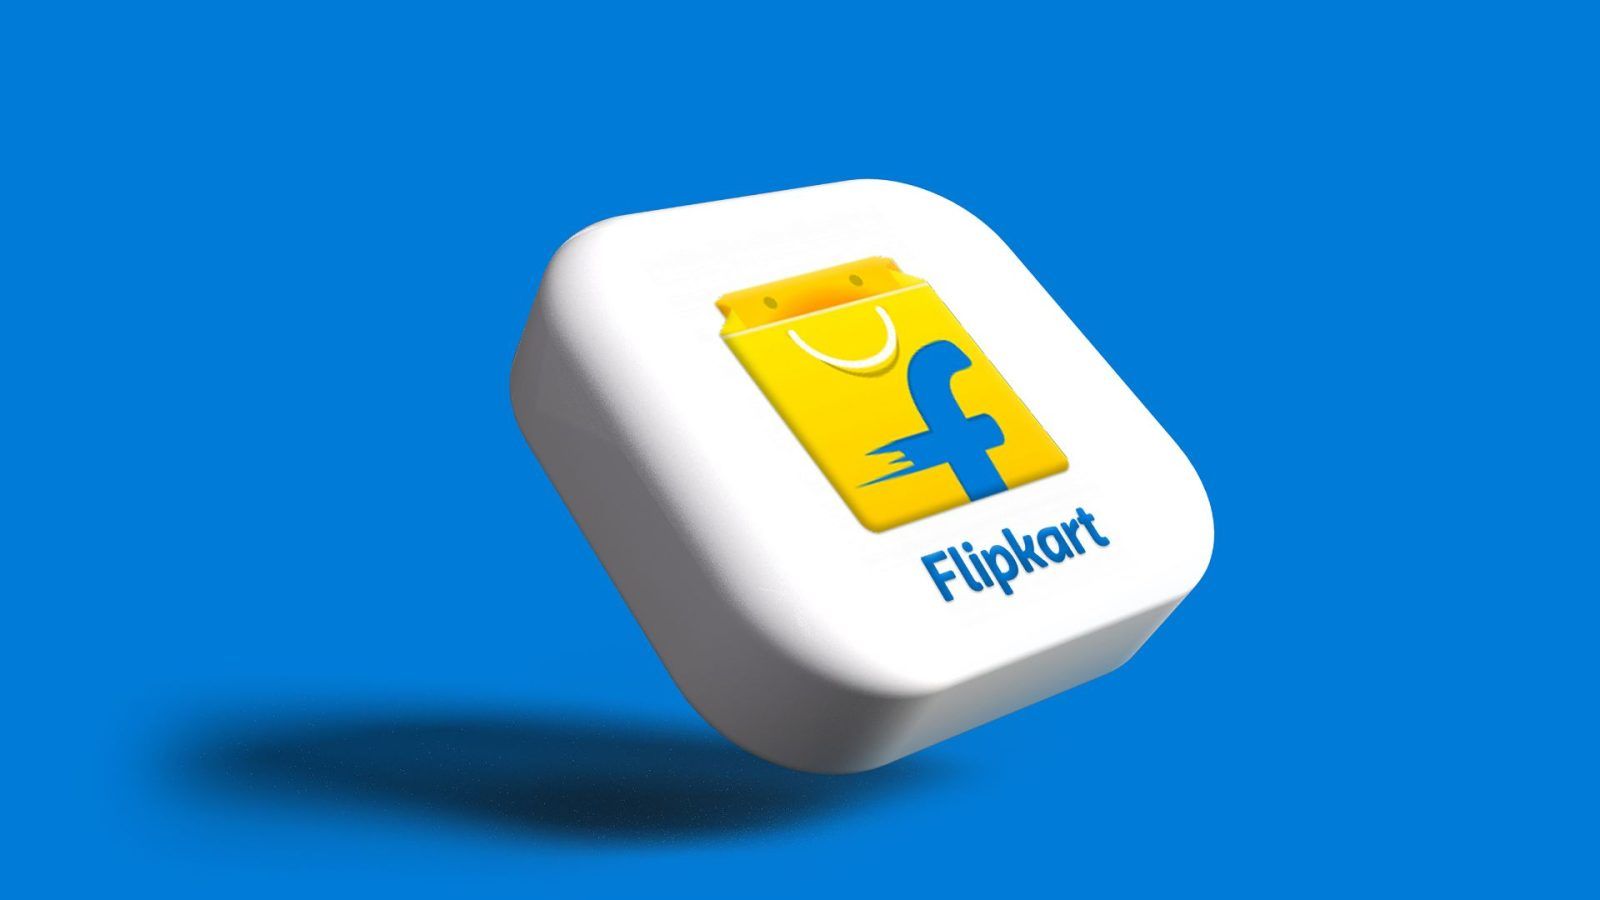 Flipkart on LinkedIn: #flipstart | 16 comments